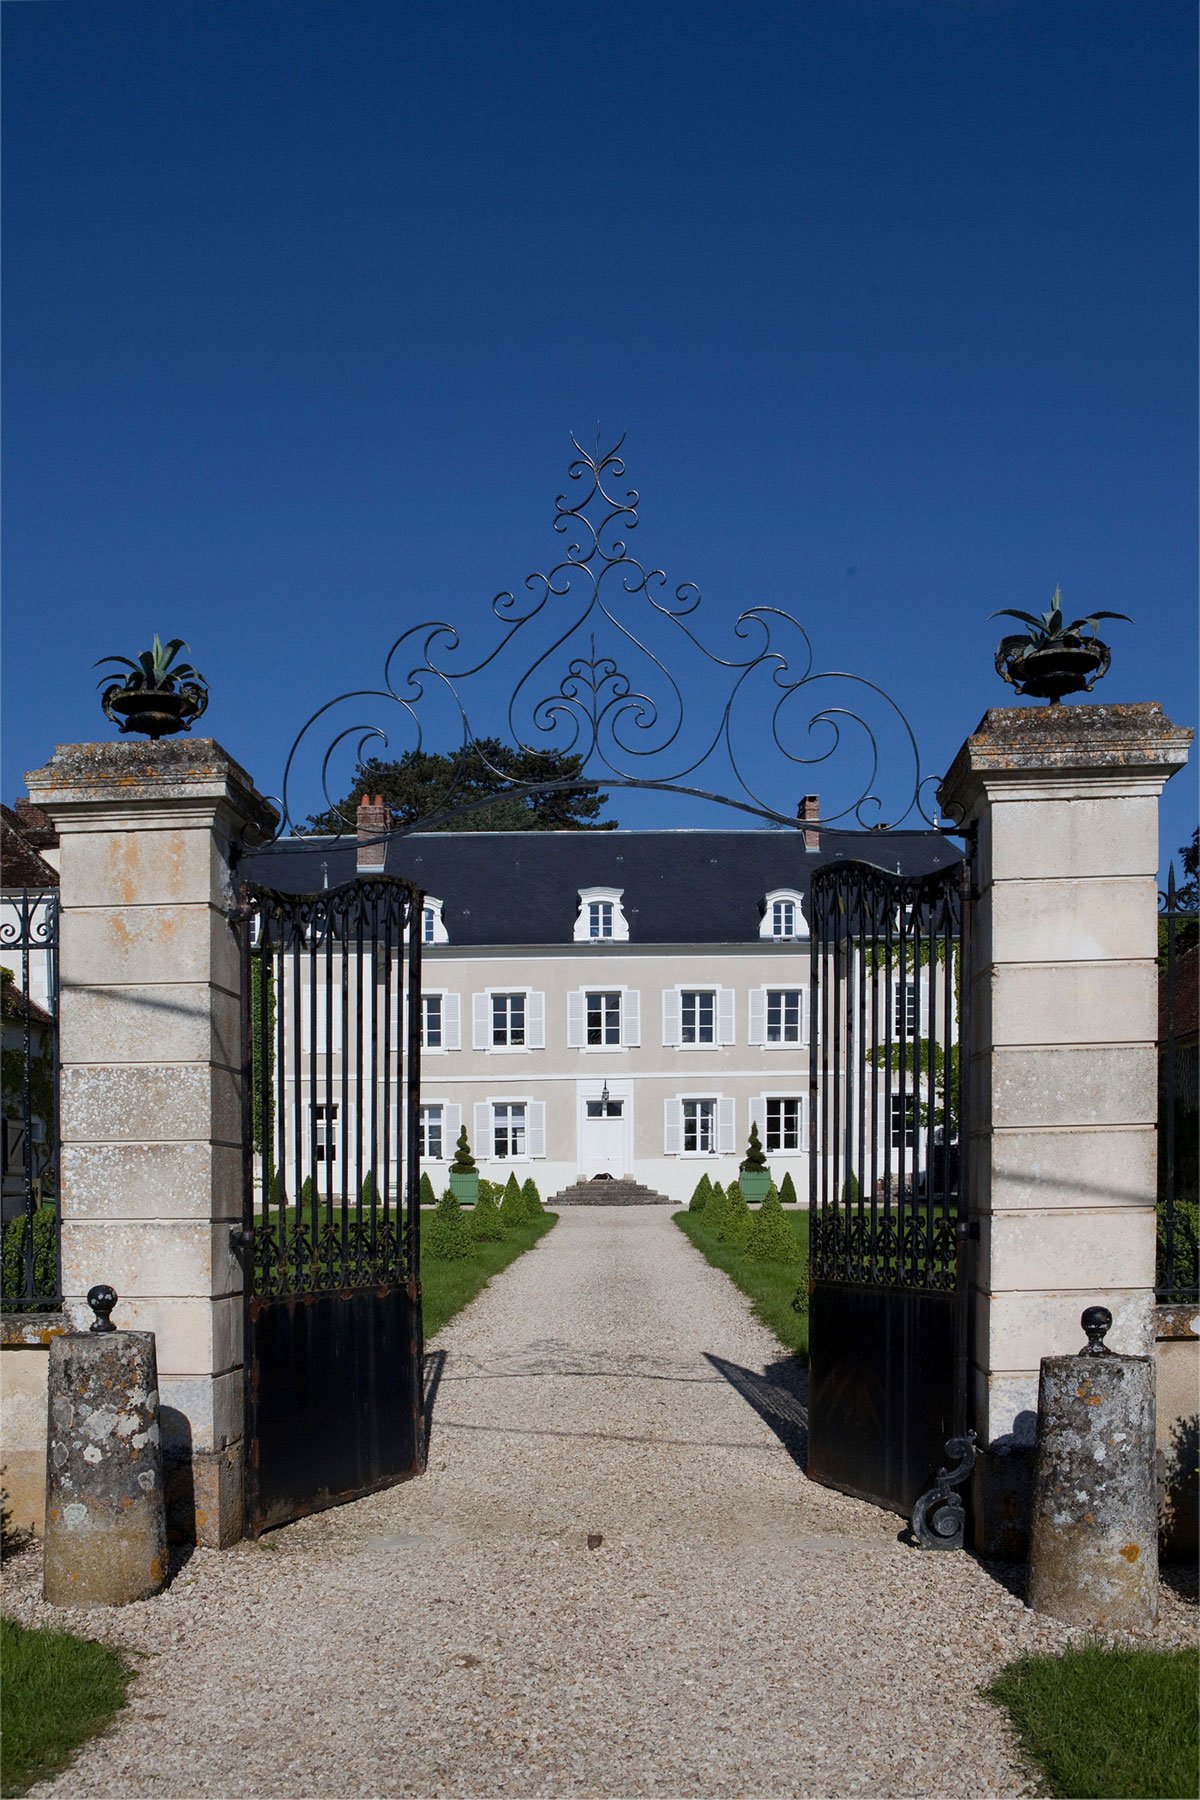 Йохан Боман, Johan Bouman, Питер Франсенс, Pieter Franssens, обзор Chateau de la Resle, отели во Франции, хороший отель во Франции, лучшие отели мира